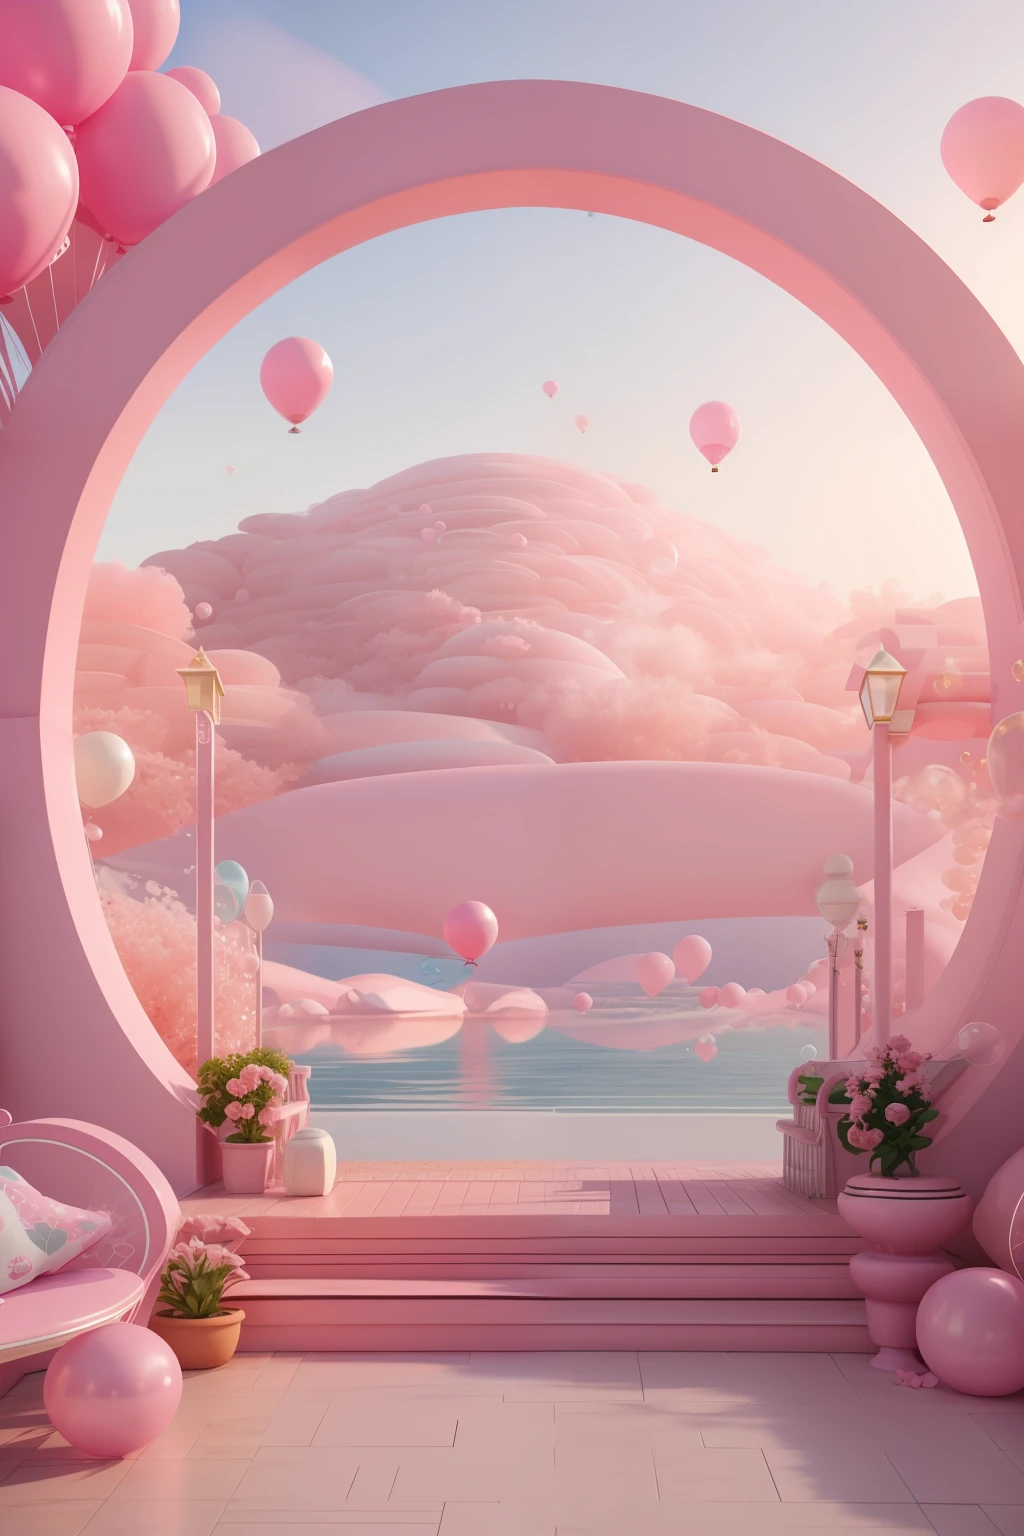 ピンクと白のアーチがあります，風船とベンチ付き, ピンクの禅スタイル, ピンクの風景, 夢のようなシーン, ピンク色の海を眺める, 3Dレンダリング様式, 様式化された 3D レンダリング, シュールな 3D レンダリング, 活気ある風景, シュールな夢の風景, 3D スタイライズシーン, 3Dレンダリングとして様式化, 夢のような雰囲気とドラマ